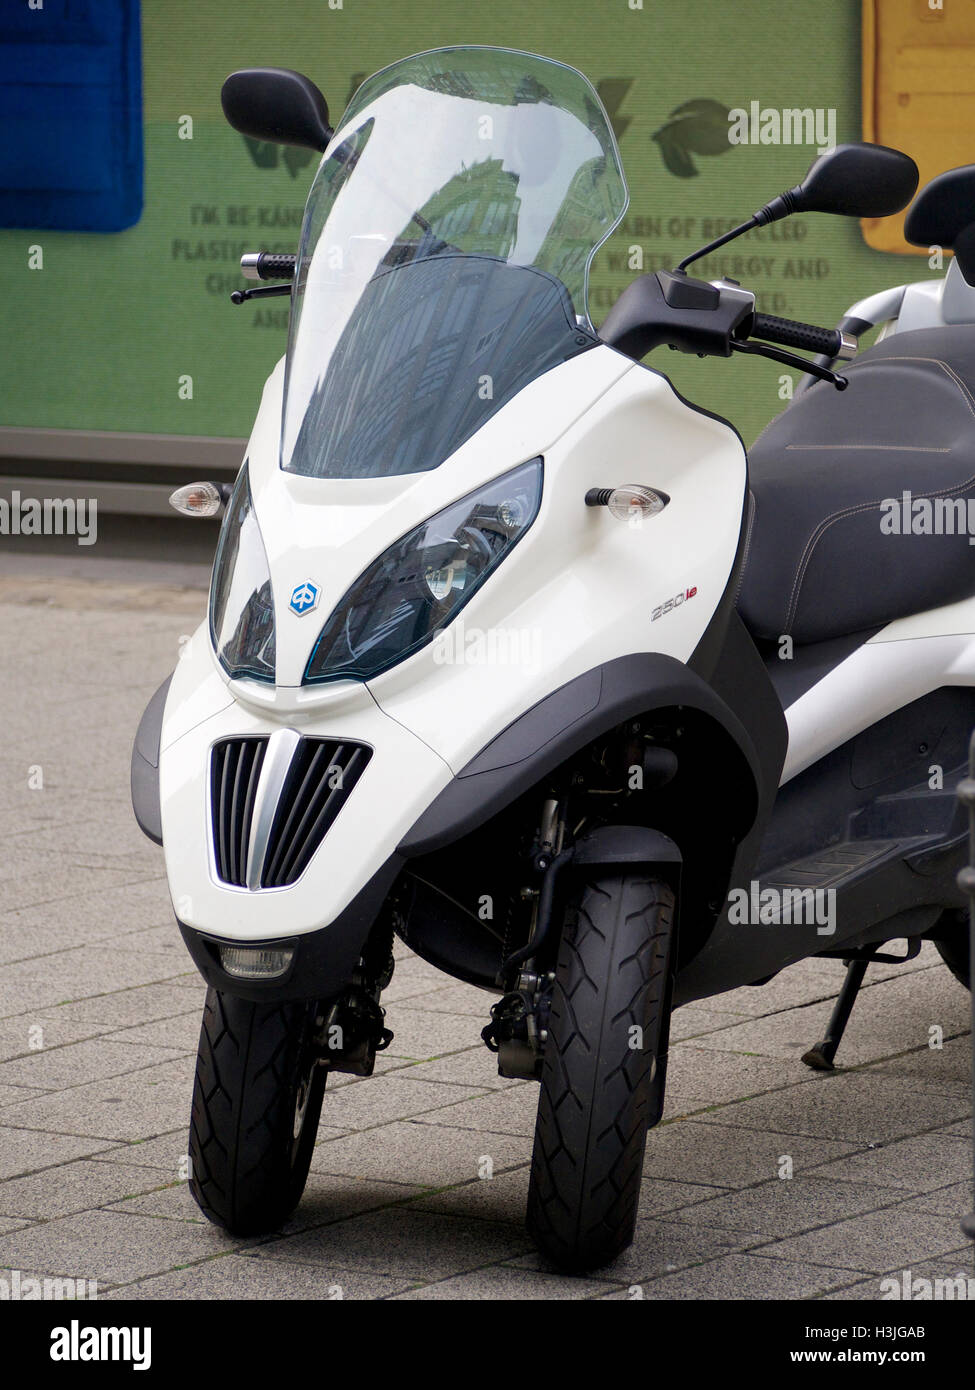 Piaggio MP3 Dreirad-Motorrad-Roller, die mit einem Auto Führerschein  verwendet werden kann. Köln, Deutschland Stockfotografie - Alamy